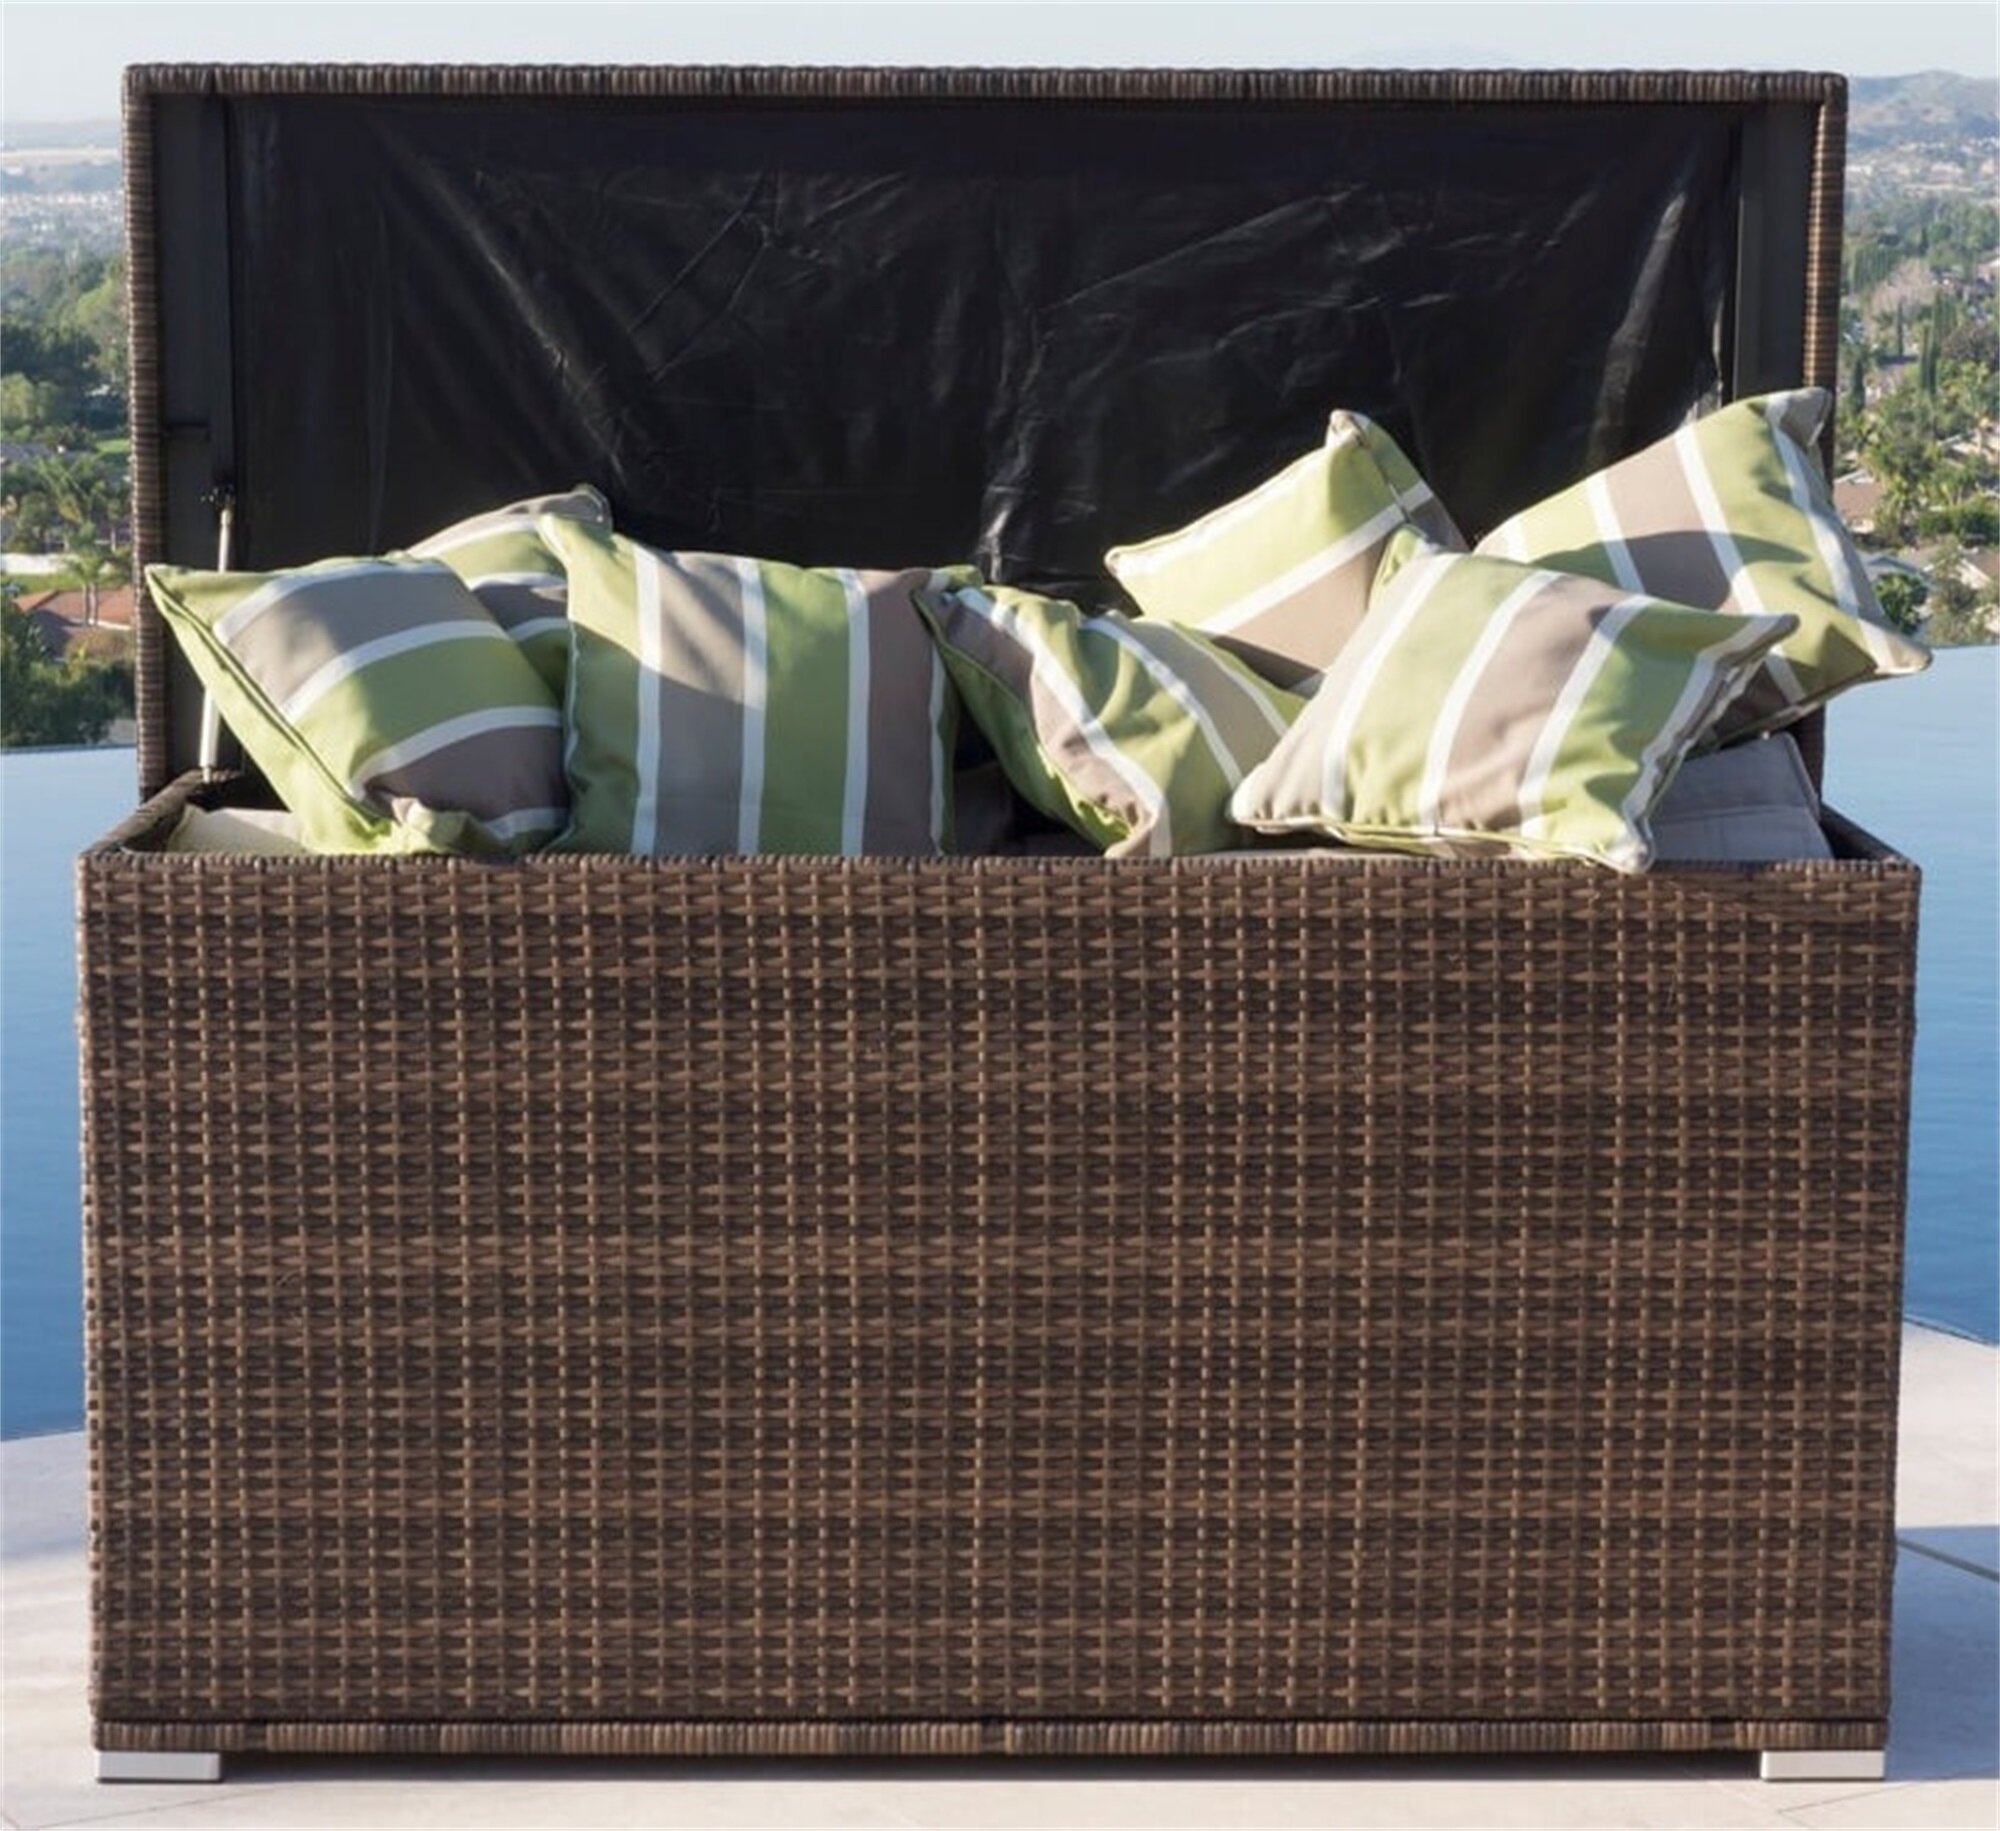 20 Gallon Deck Box Patio Wicker Storage White Furniture Seat Outdoor Indoor Garden Yard Resin Basket Container & eBook 